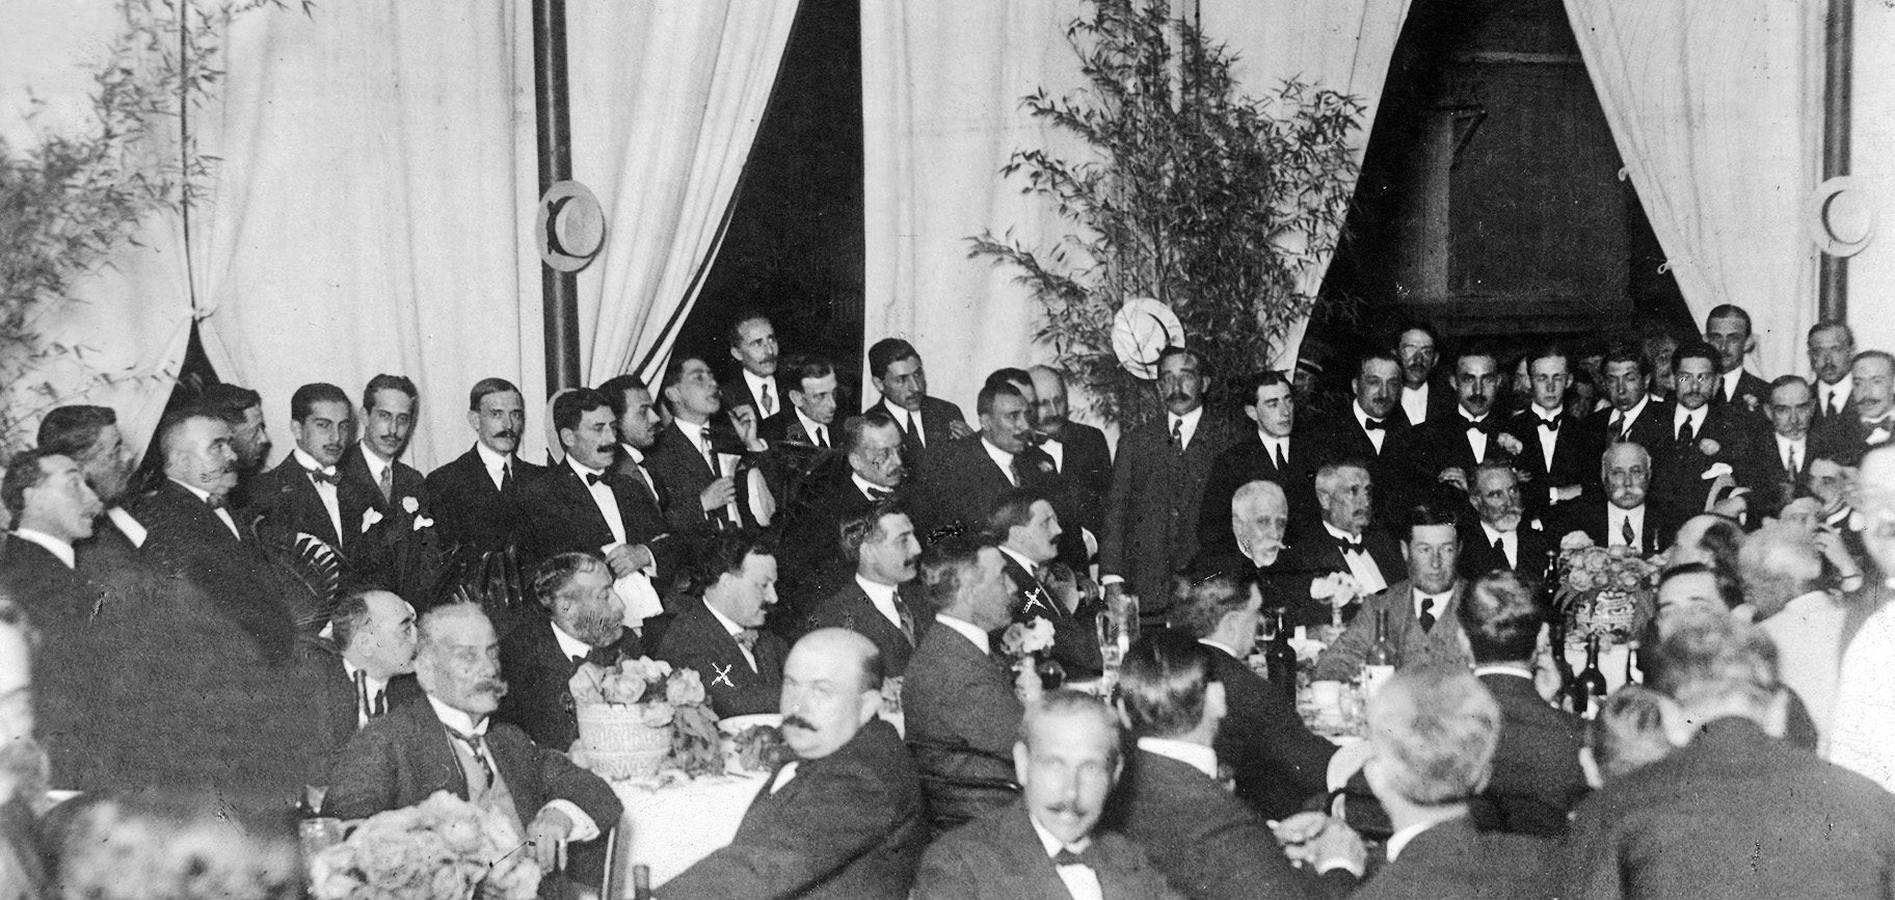 Banquete como obsequio a los hermnos Álvarez Quintero en la caseta del Círculo de Labradores durante de la Feria de Abril de Sevilla de 1915